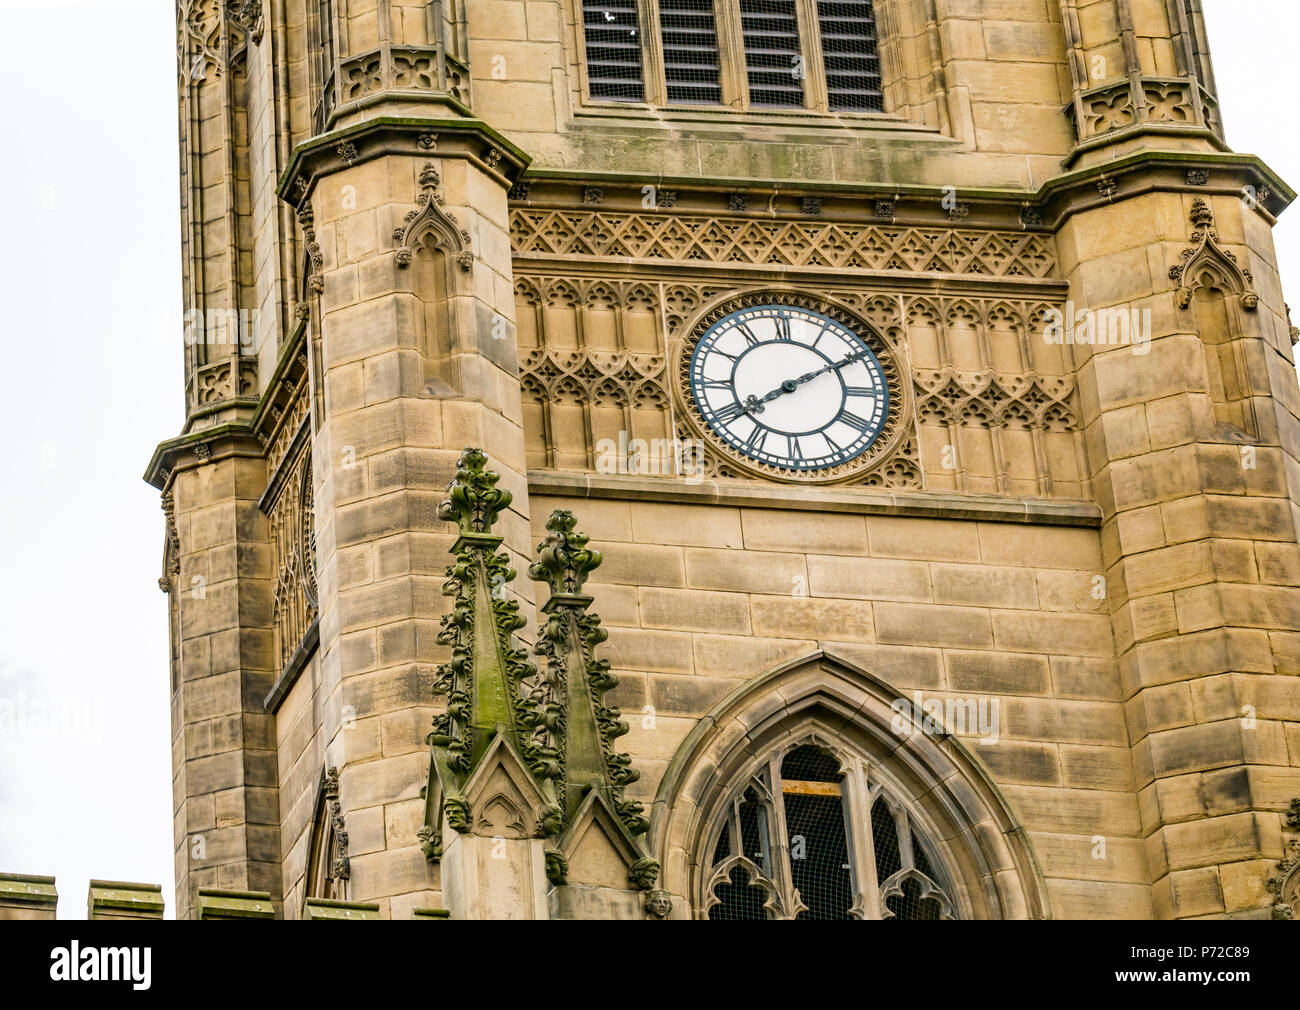 Vue rapprochée de la tour d'horloge de l'église De St Luke, Liverpool, Angleterre, Royaume-Uni, endommagée par une bombe dans la seconde Guerre mondiale, maintenant une ruine Banque D'Images